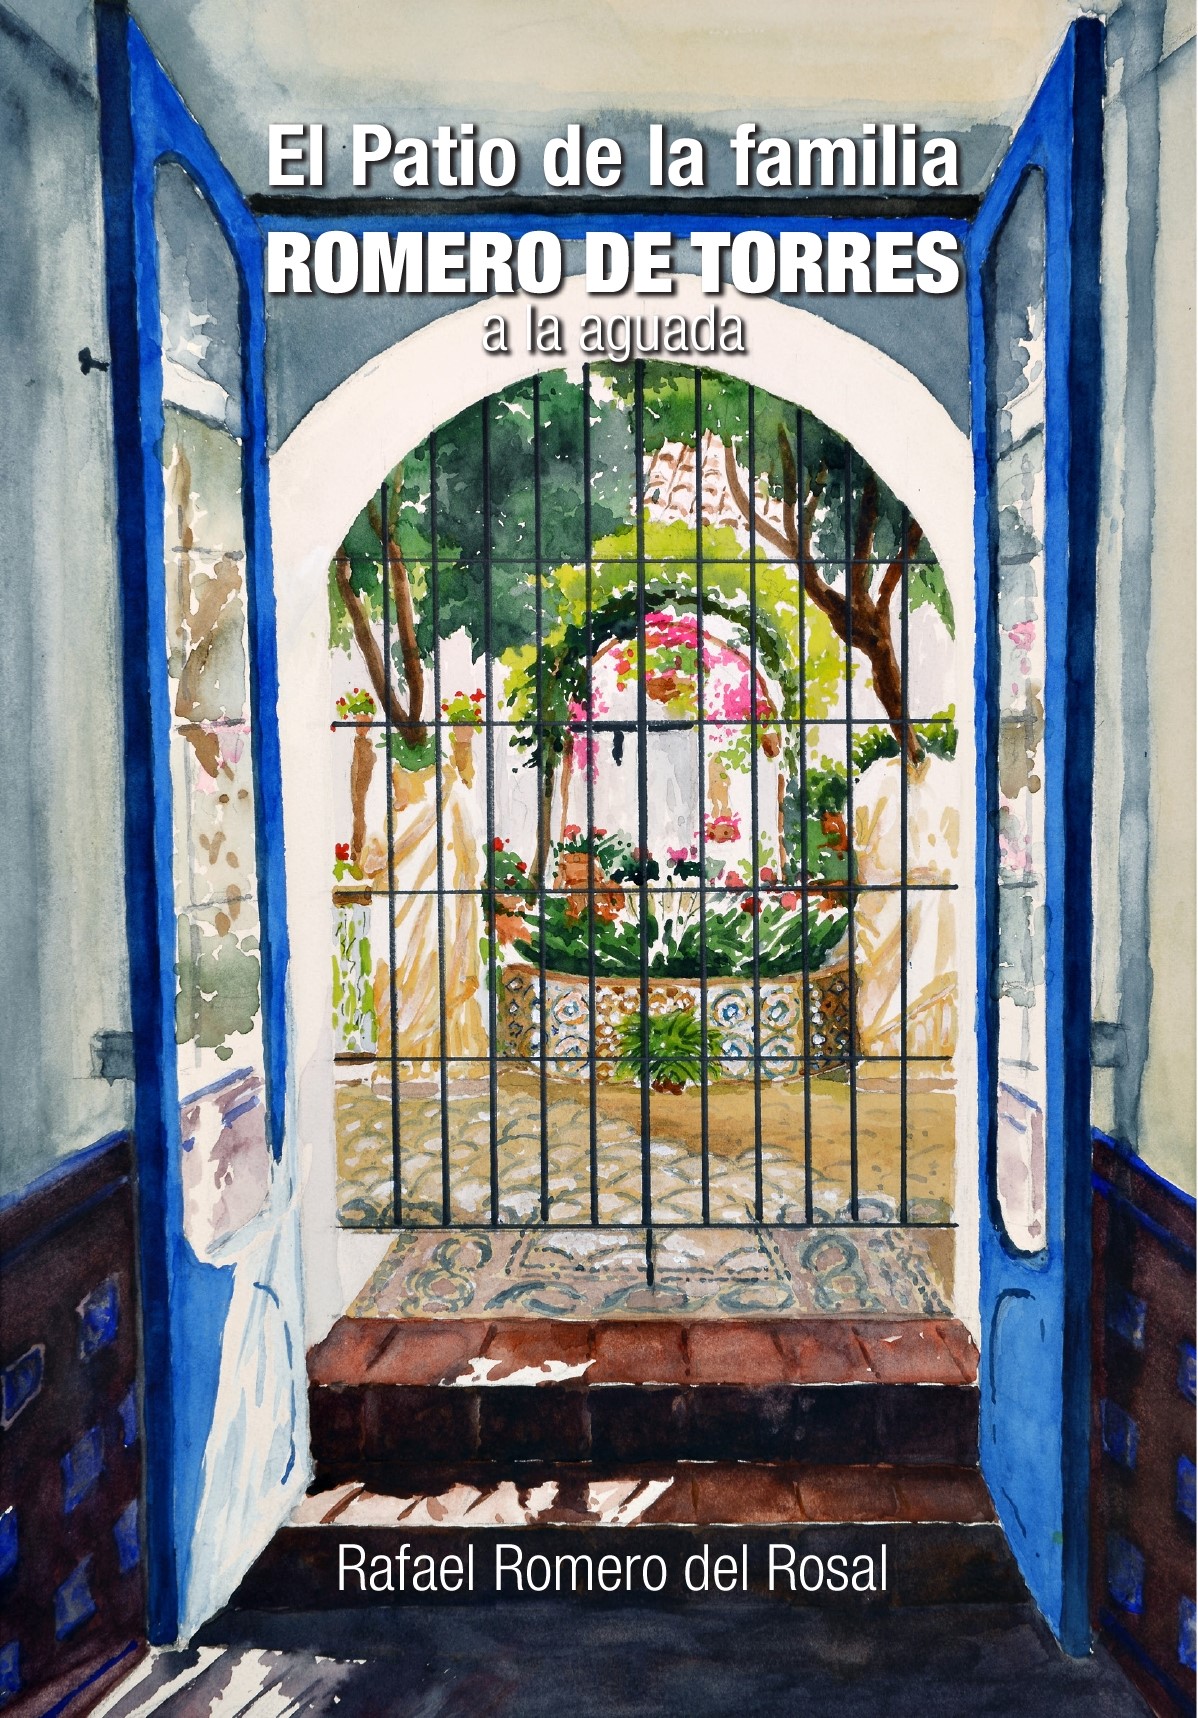 El Patio de la familia Romero de Torres.jpg